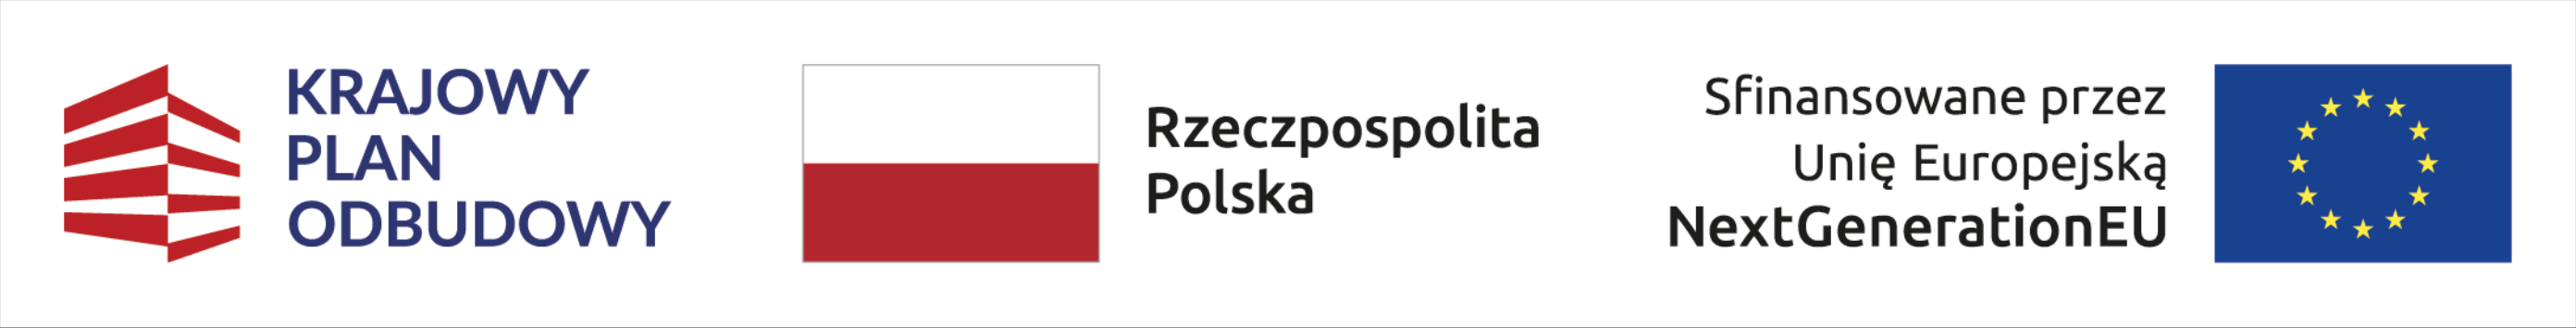 3 loga: Krajowy Plan Odbudowy, Rzeczpospolita Polska, Sfinansowane przez Unię Europejską NextGenerationEU